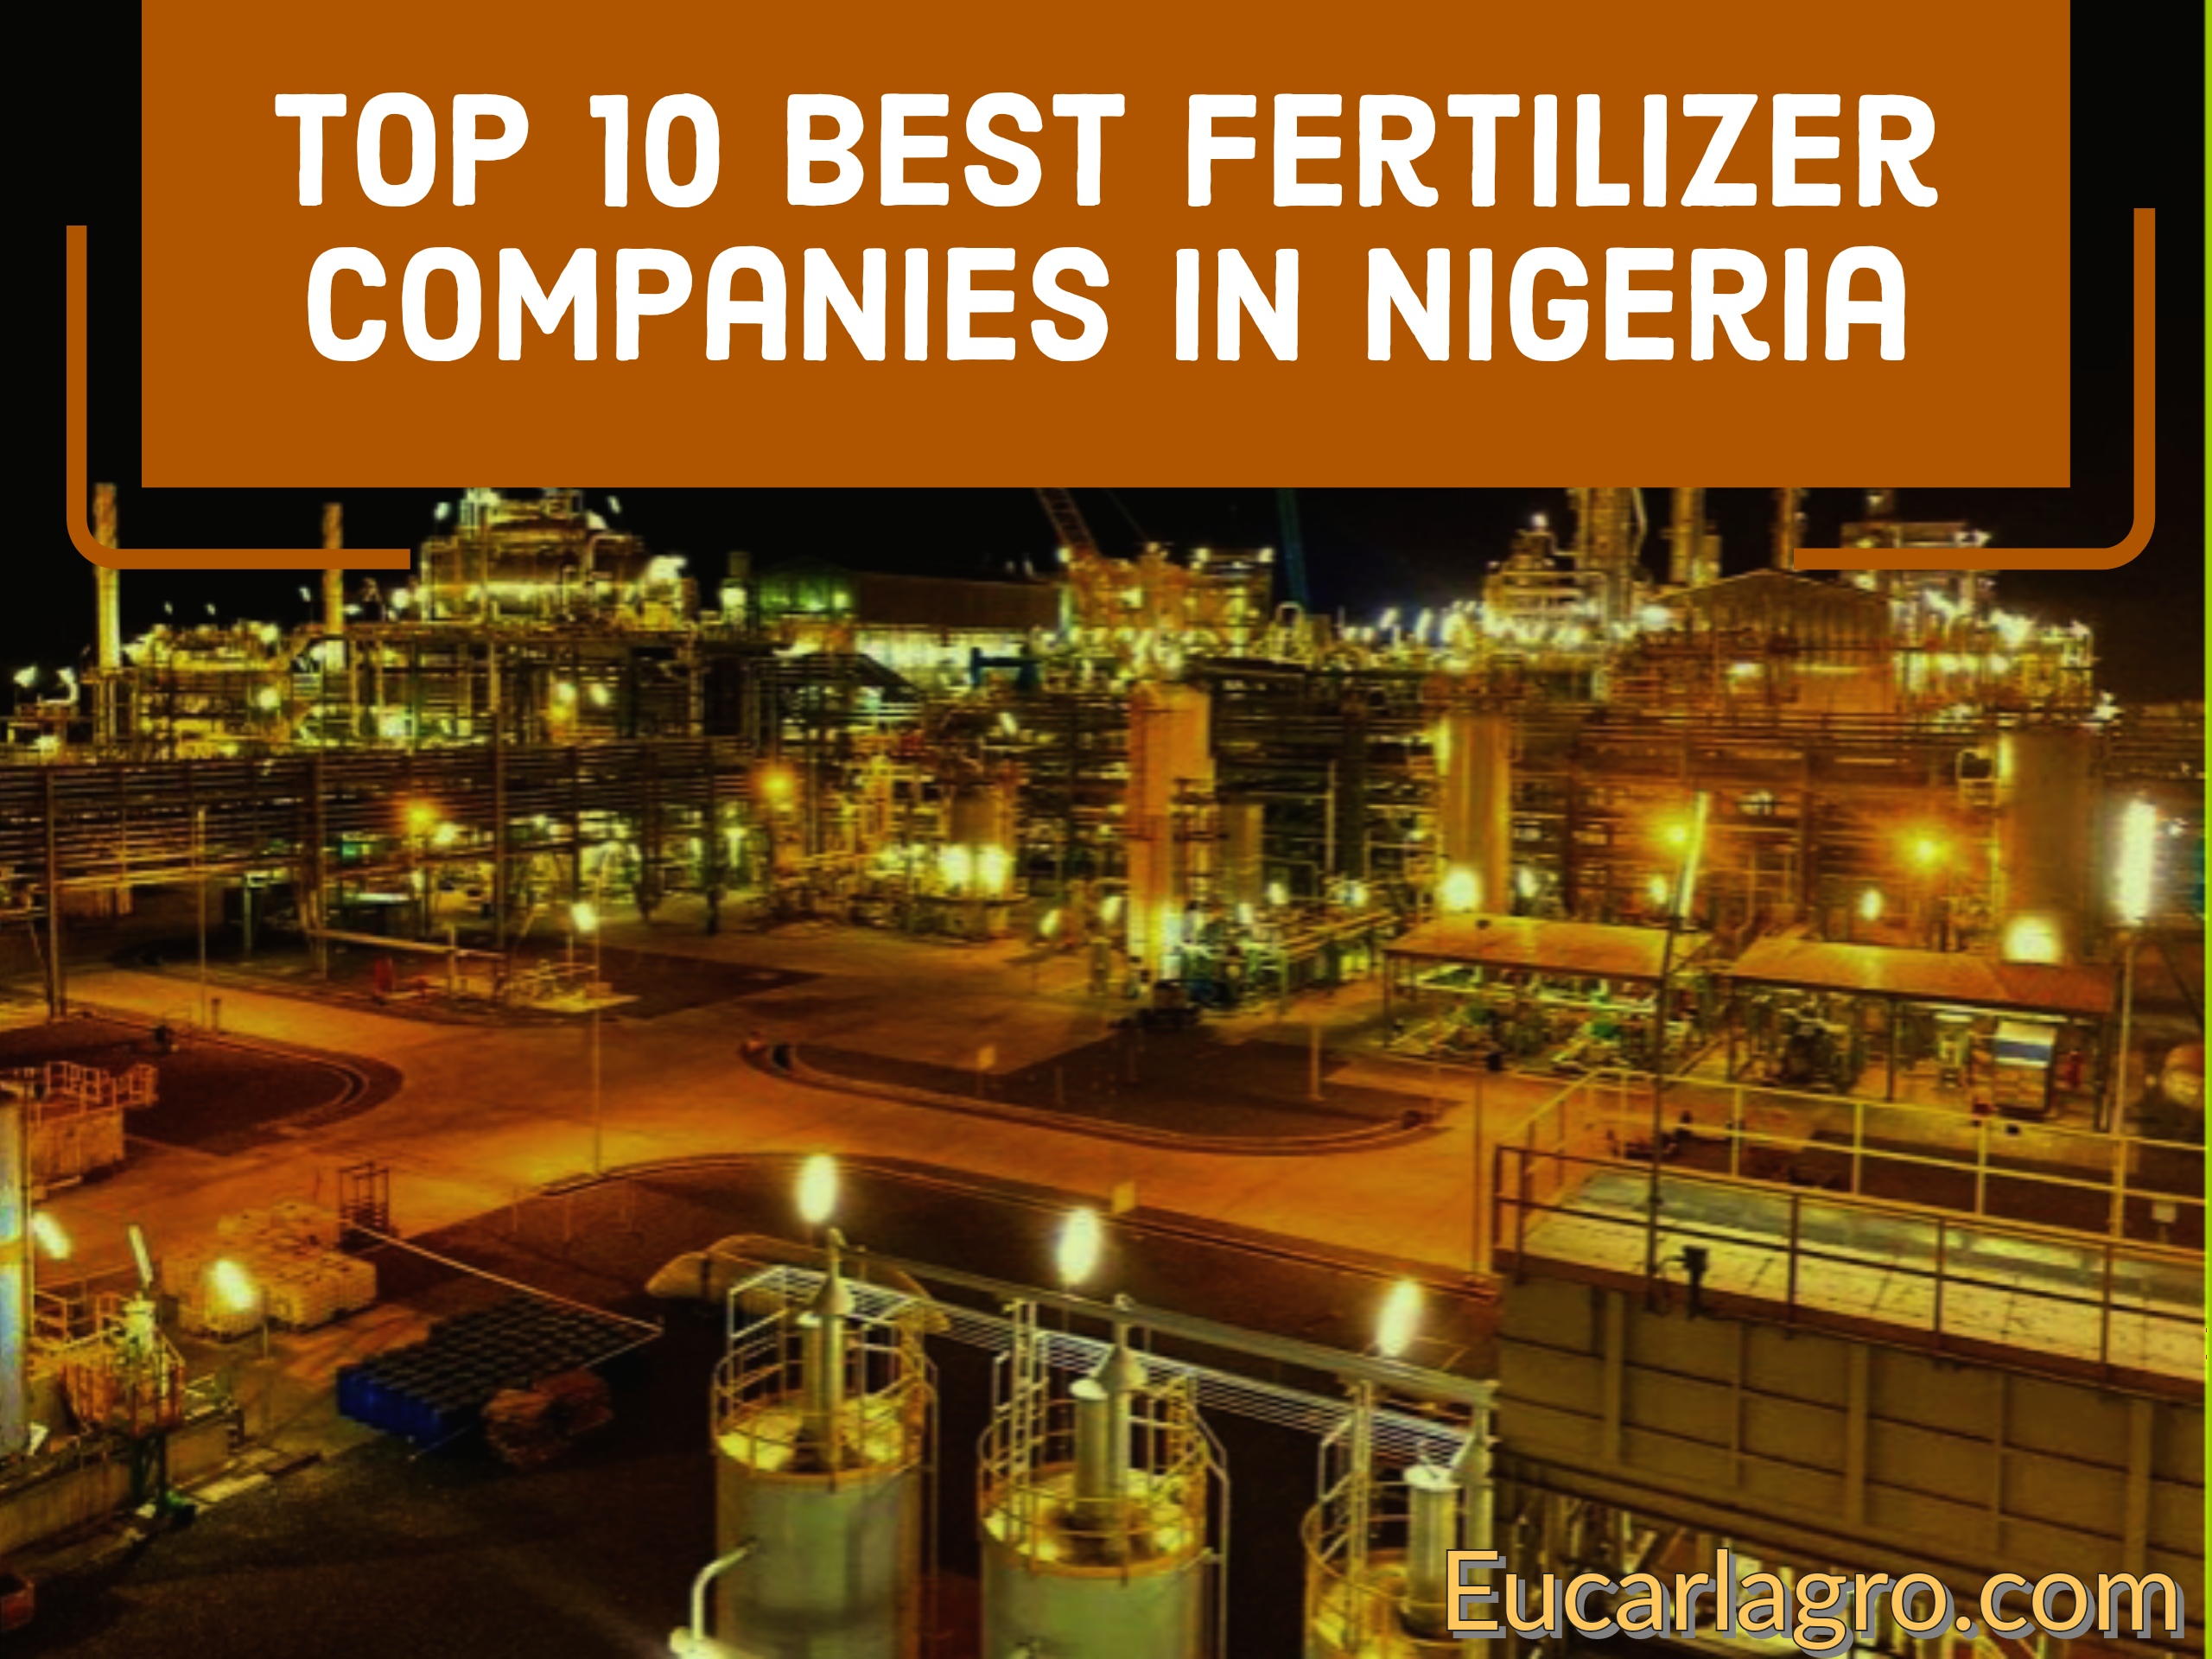 Top 10 Best Fertilizer Companies in Nigeria